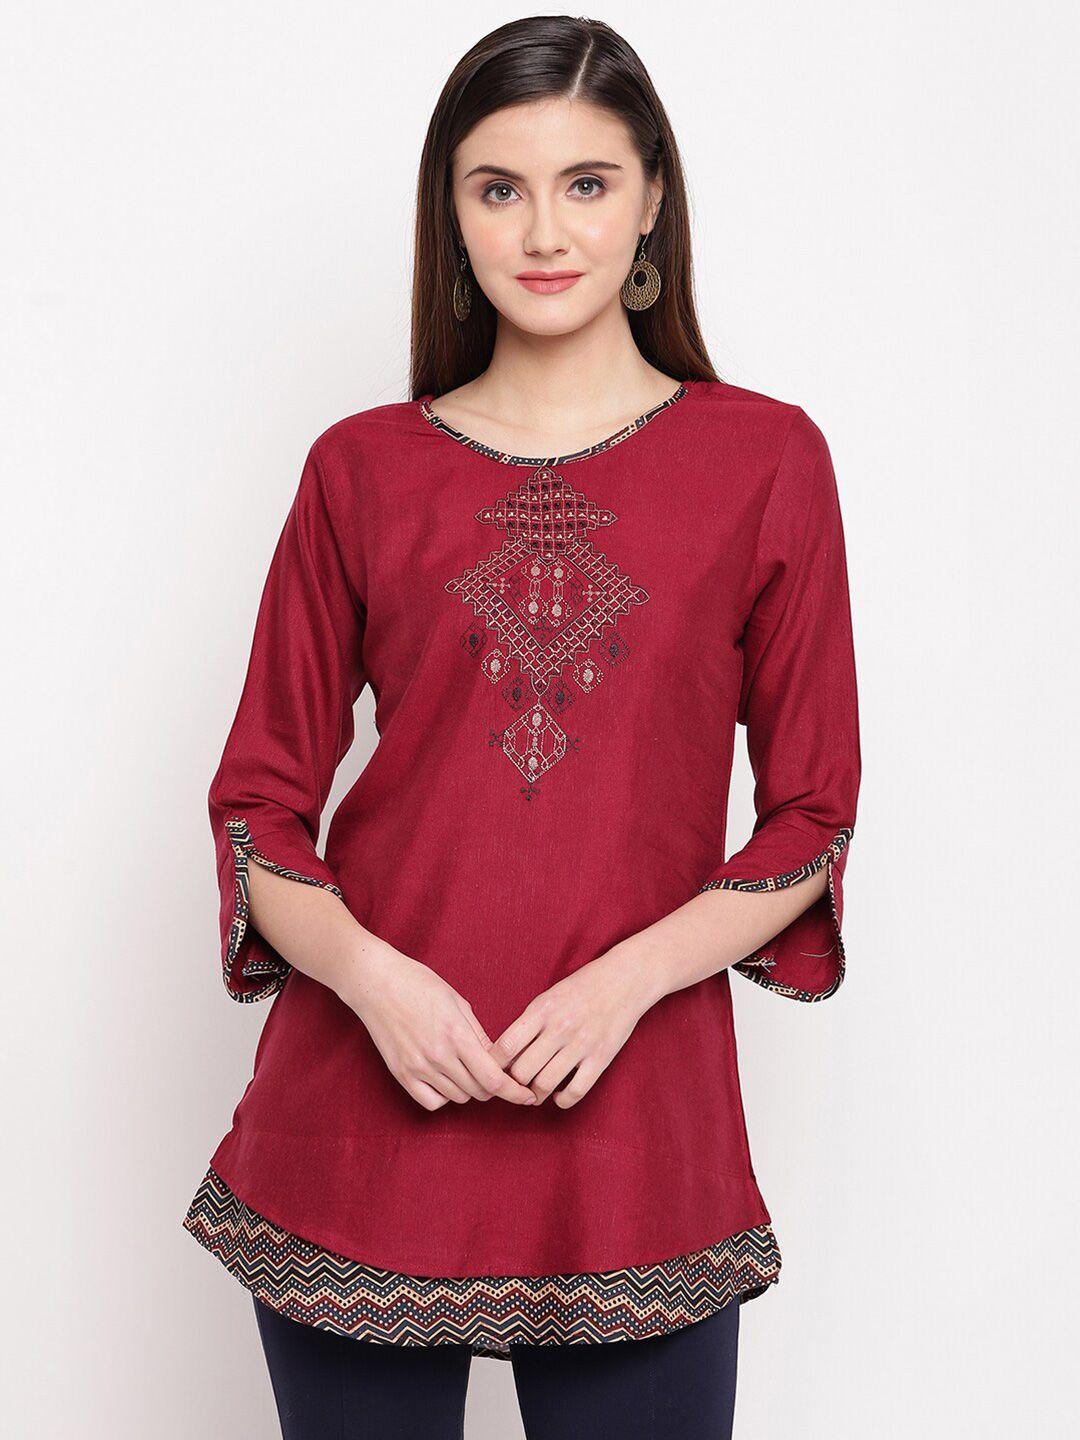 kvsfab woman maroon geometric embroidered kurti